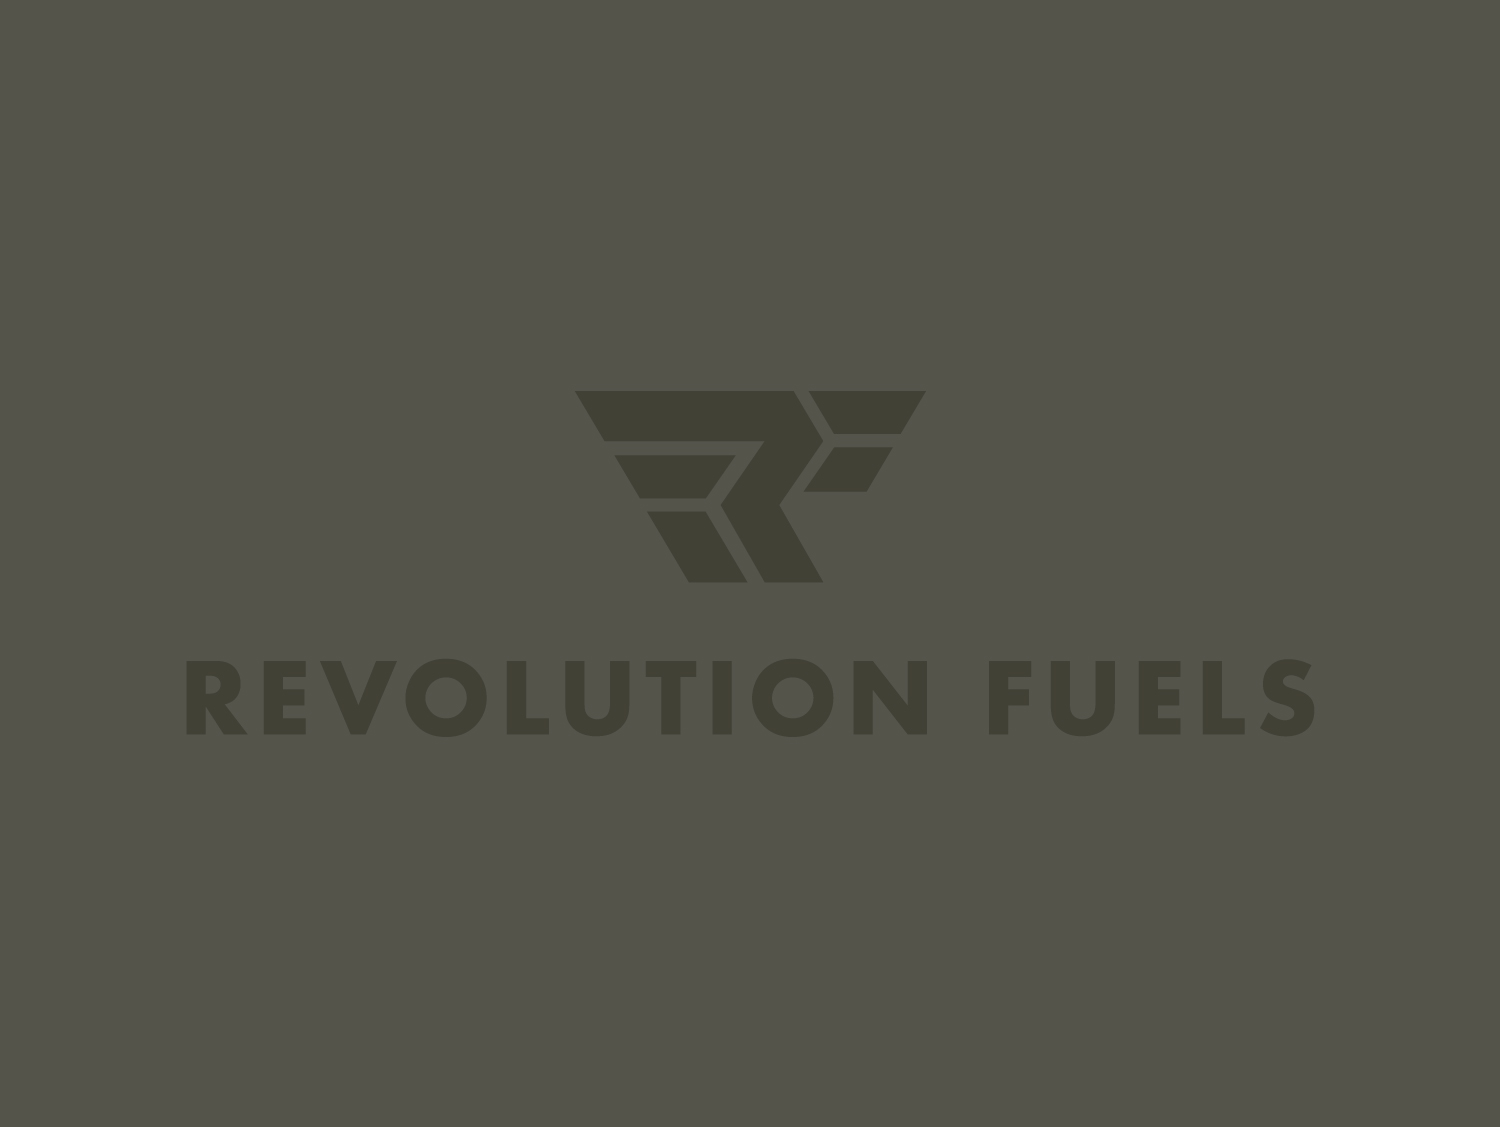 Revolution-Fuels-logo-01--.jpg